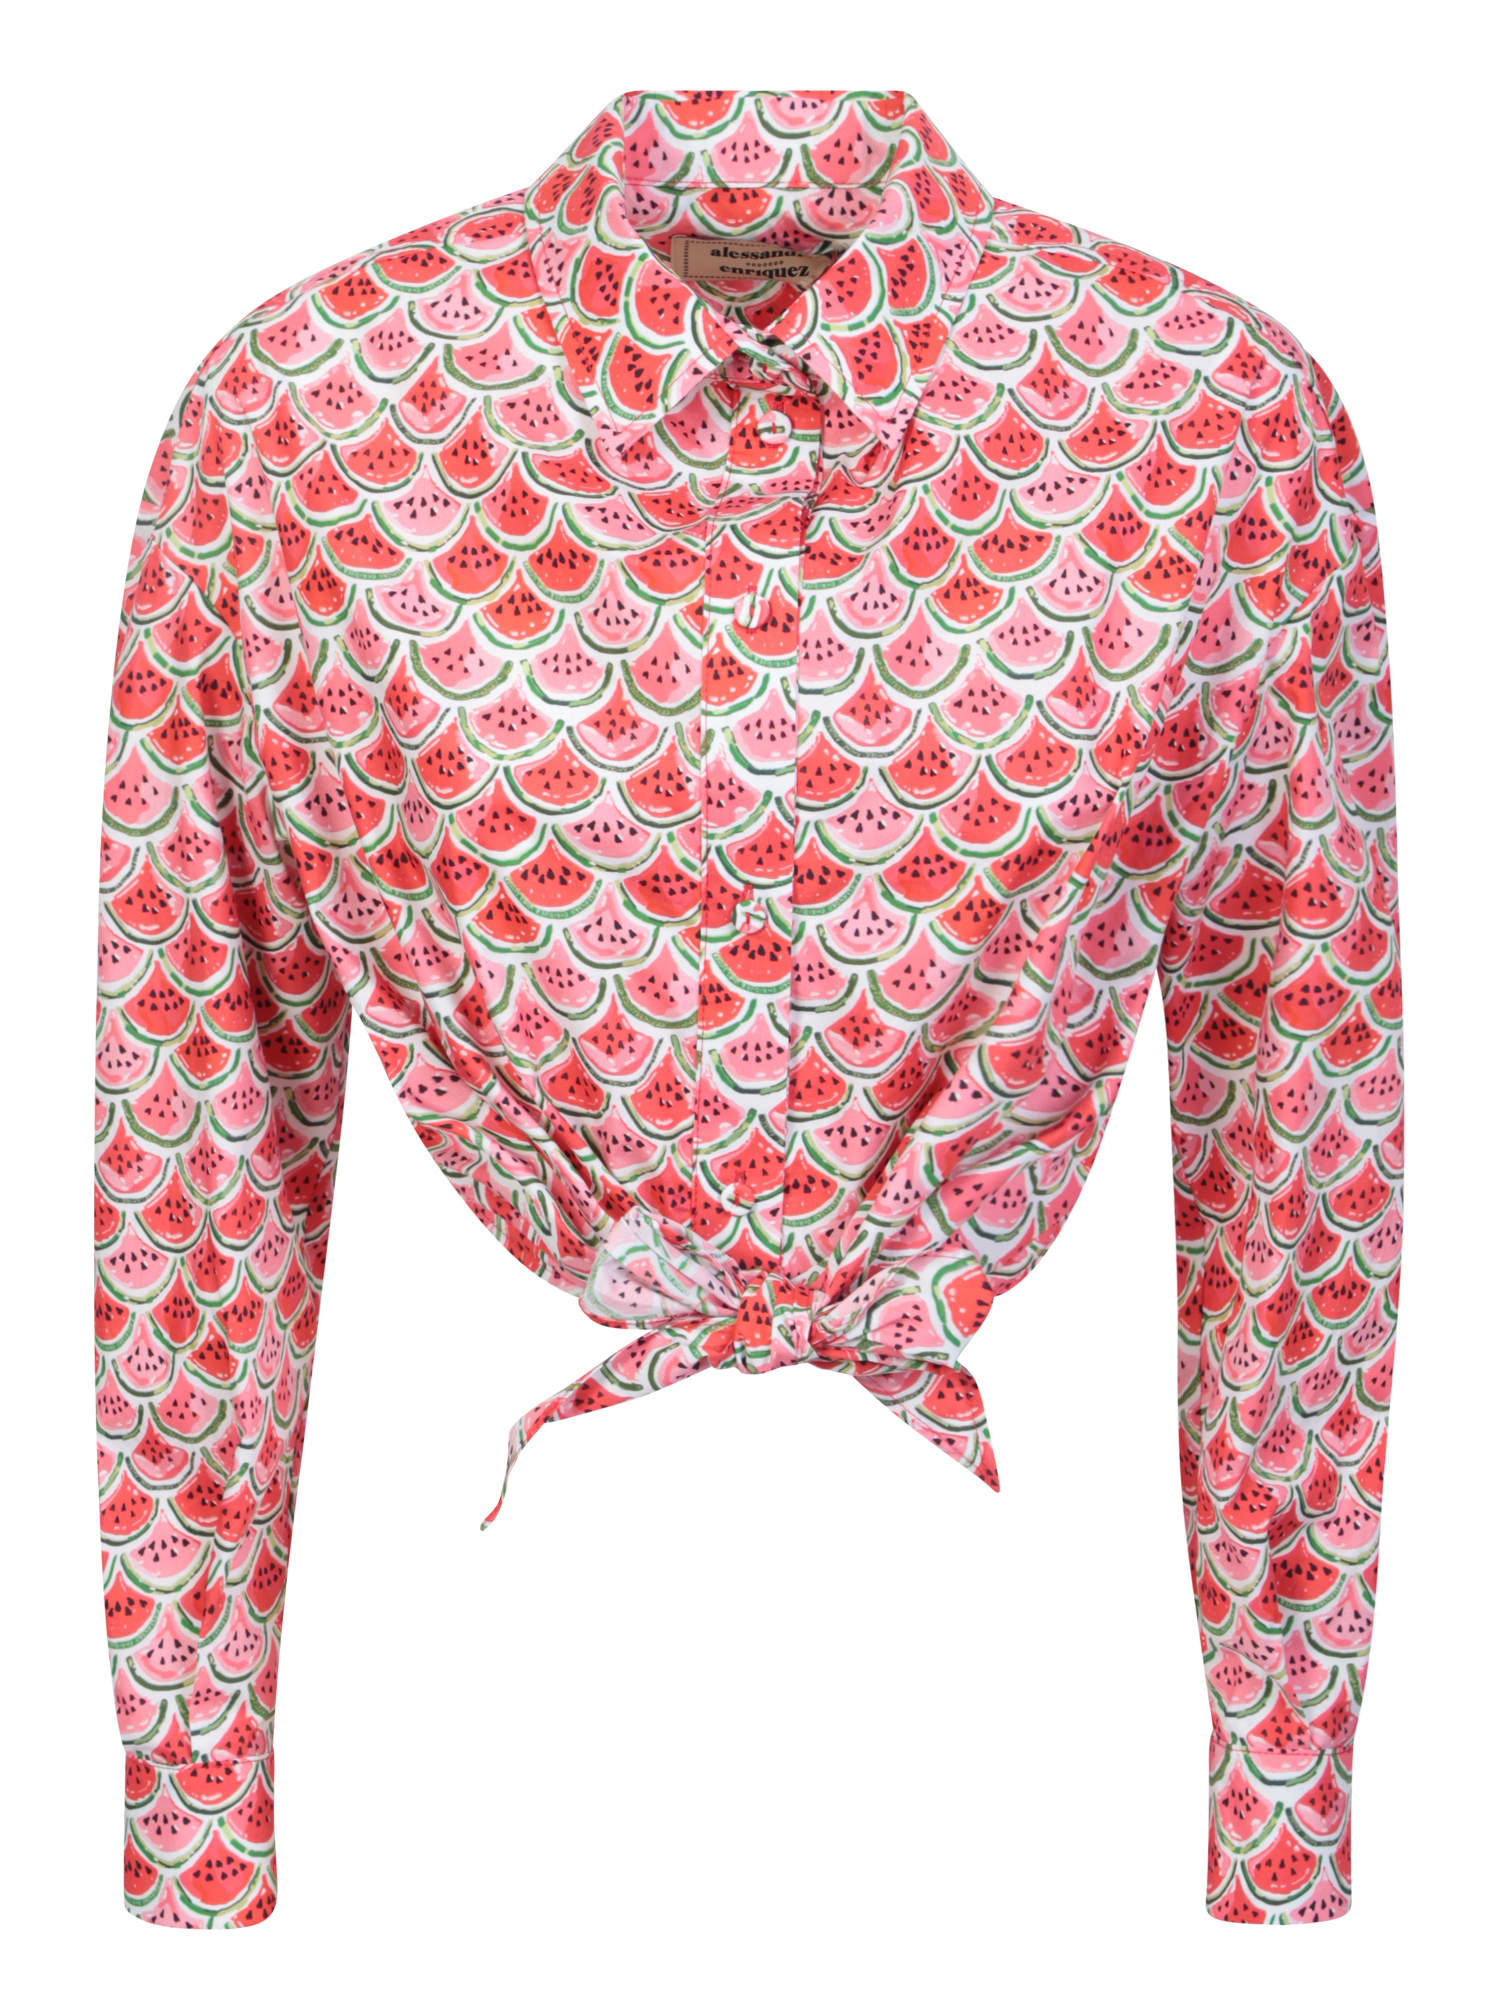 Alessandro Enriquez Watermelon Print Multicolor Shirt